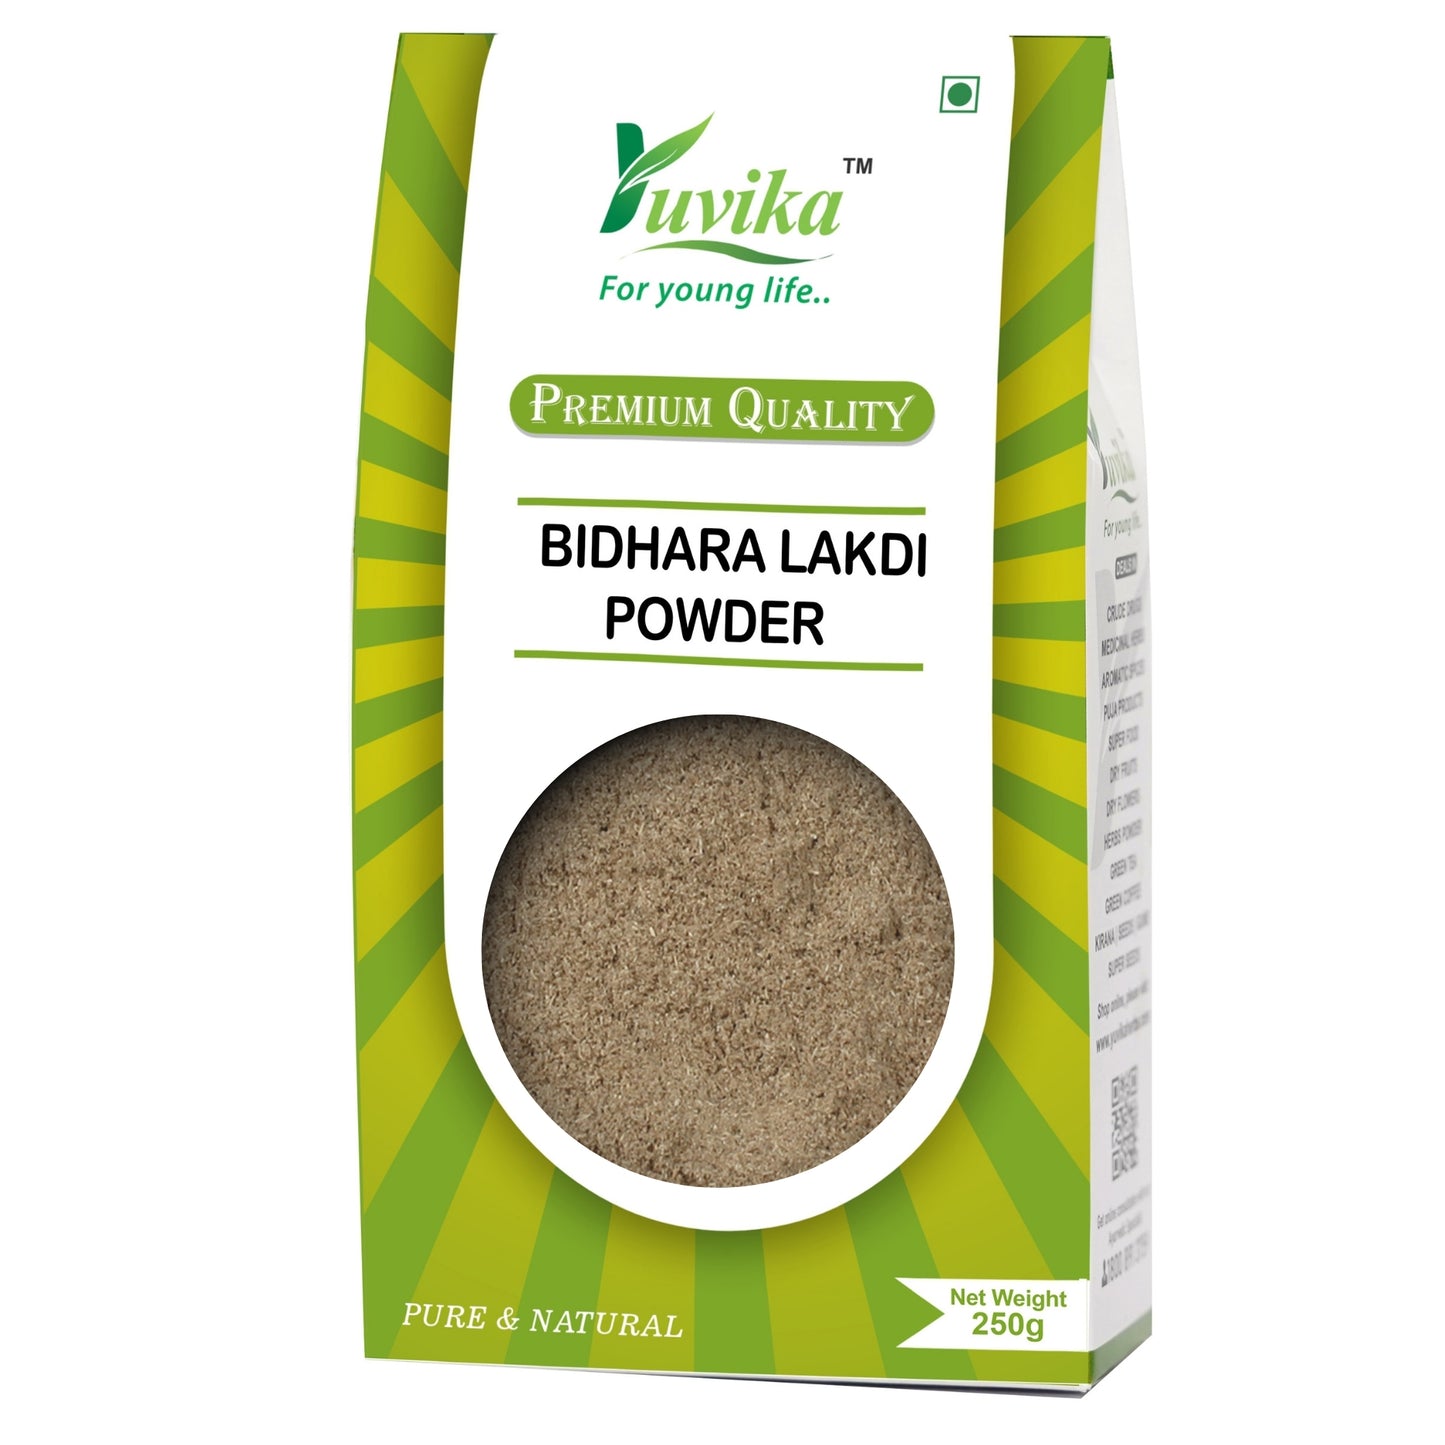 Bidhara Lakdi Powder - Vidhara Powder - Argyreia Nervosa (250g)